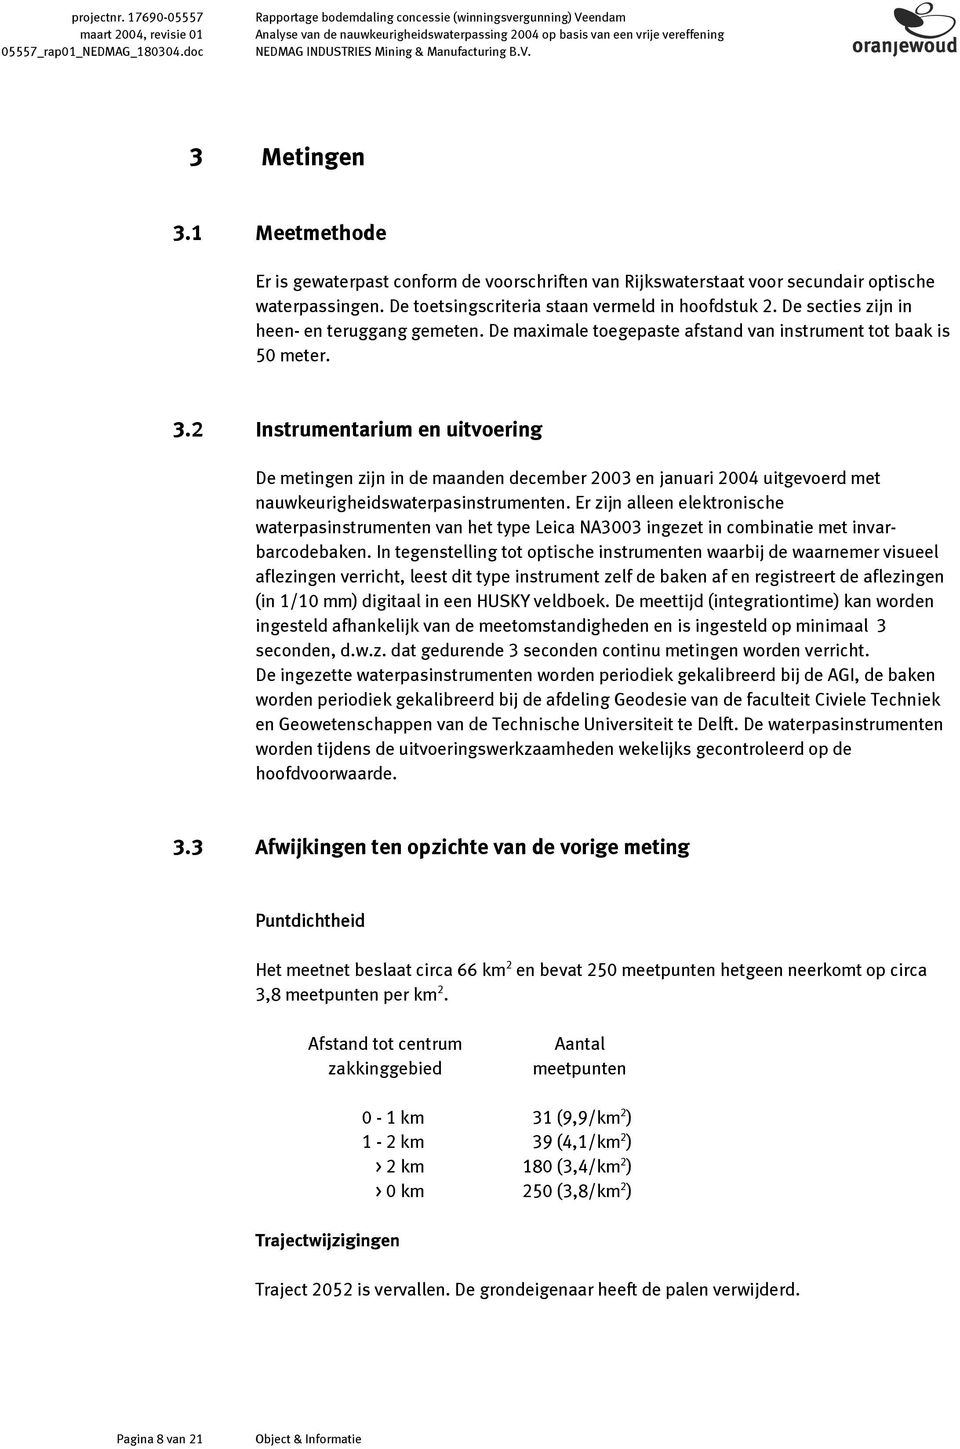 1 Meetmethode Er is gewaterpast conform de voorschriften van Rijkswaterstaat voor secundair optische waterpassingen. De toetsingscriteria staan vermeld in hoofdstuk 2.